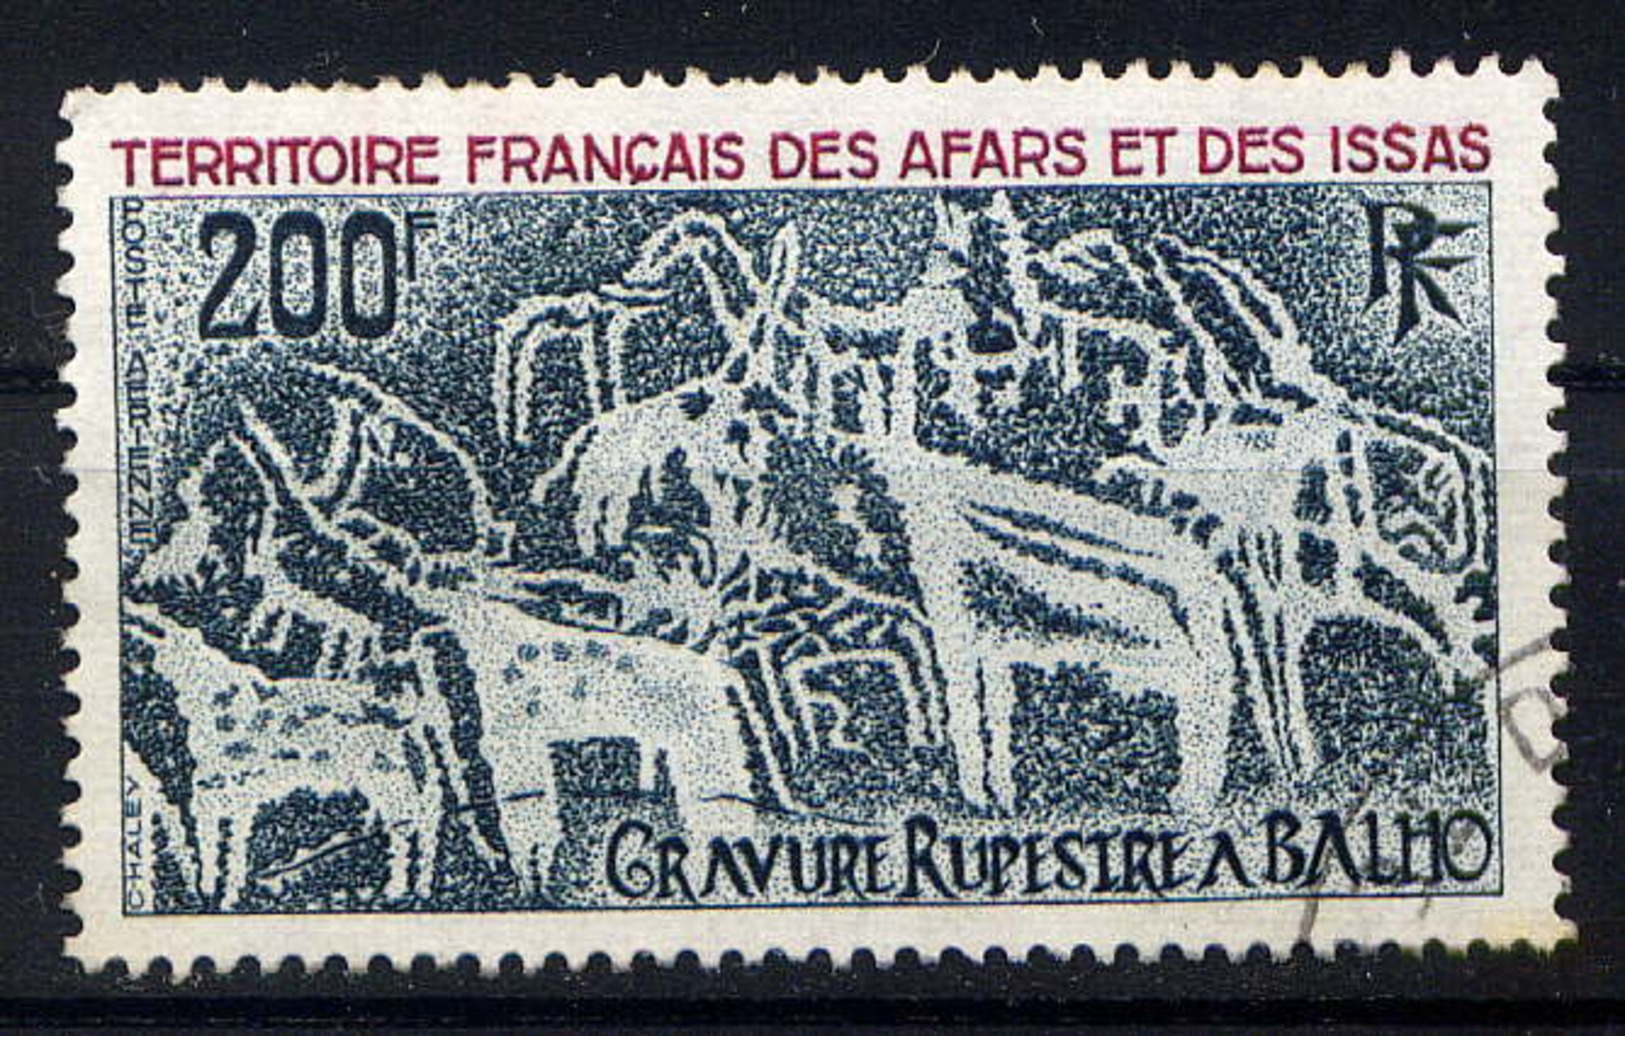 AFARS - A100° - GRAVURE RUPESTRE DE BILHOS - Used Stamps